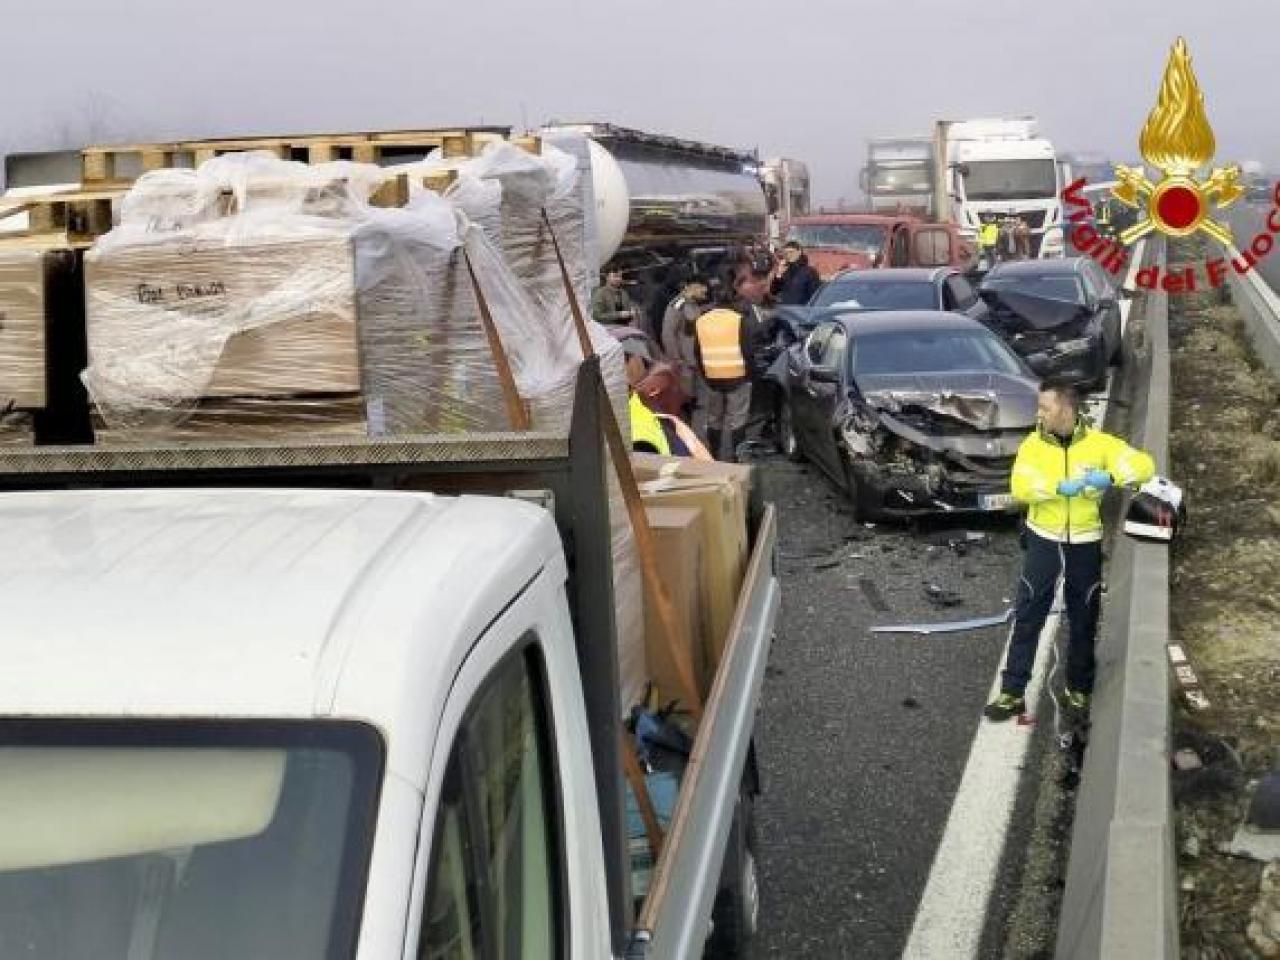 Cronaca, autostrada A1: incidenti a catena per nebbia, traffico in tilt, feriti e tratto chiuso tra Parma e Piacenza - VIDEO